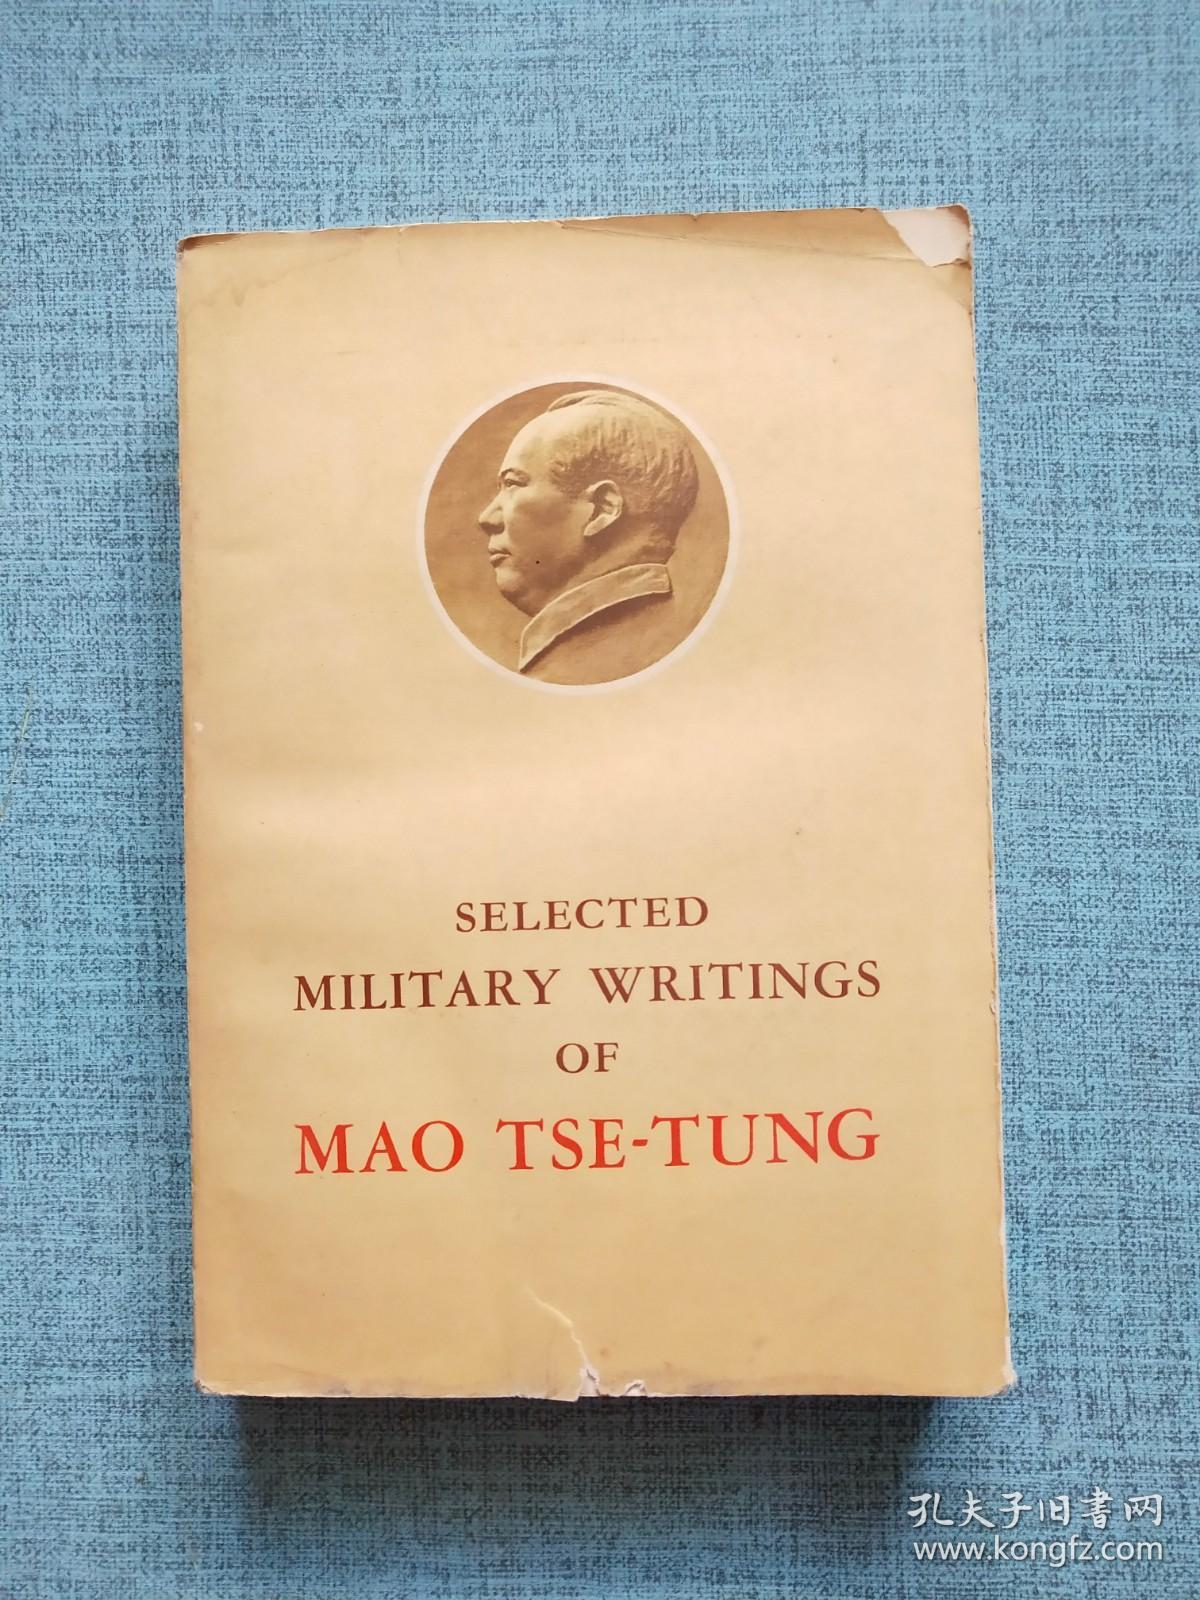 SELECTED MILITARY WRITINGS OF MAO TSE -TUNG